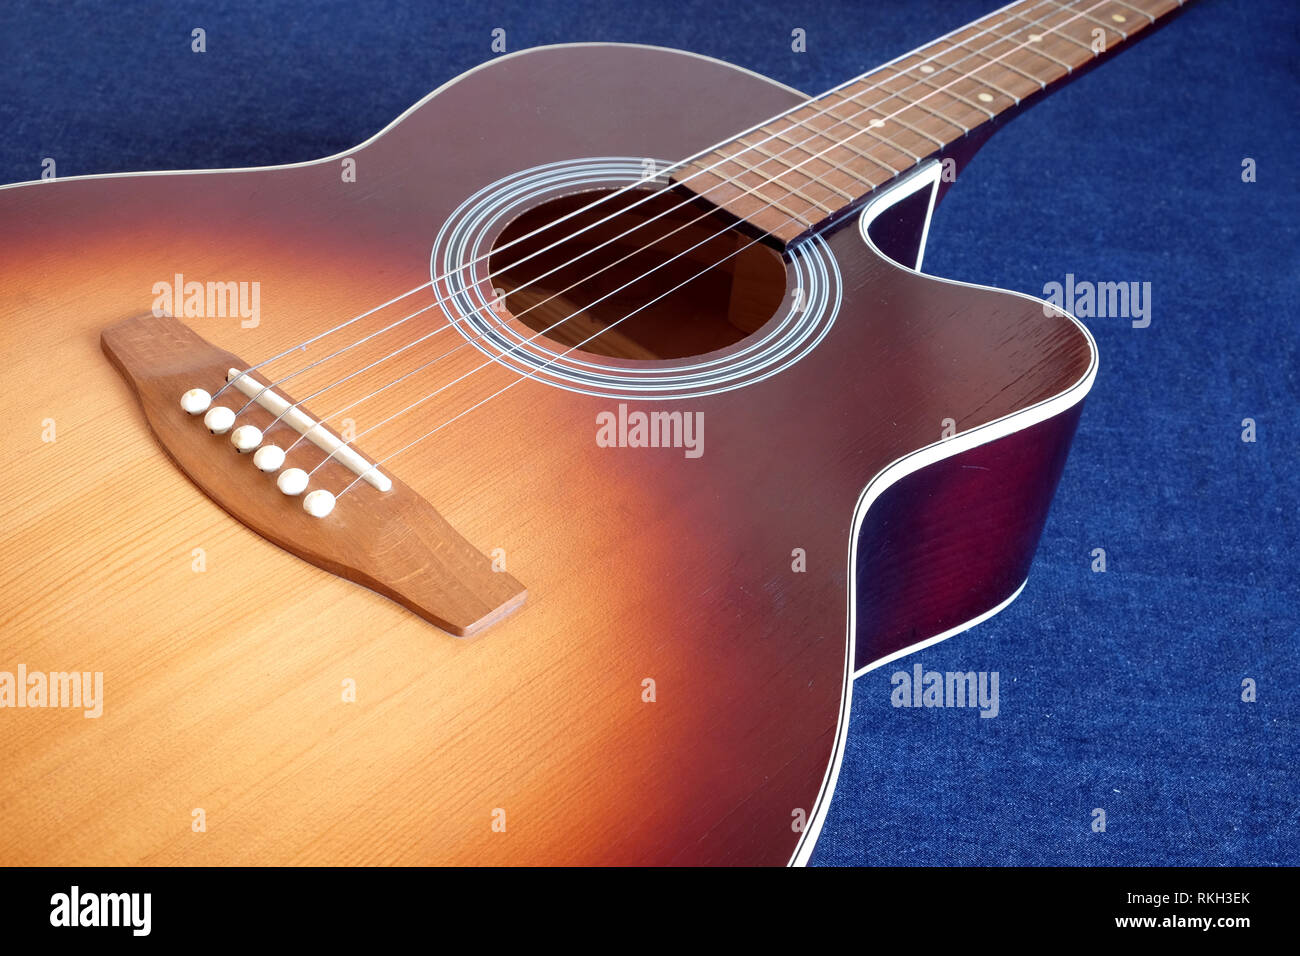 Klassische akustische sechs Saiten sunburst Farbe Top von mit Cutaway Fragment auf Jeans Hintergrund Seitenansicht closeup Fichte Gitarre Stockfoto